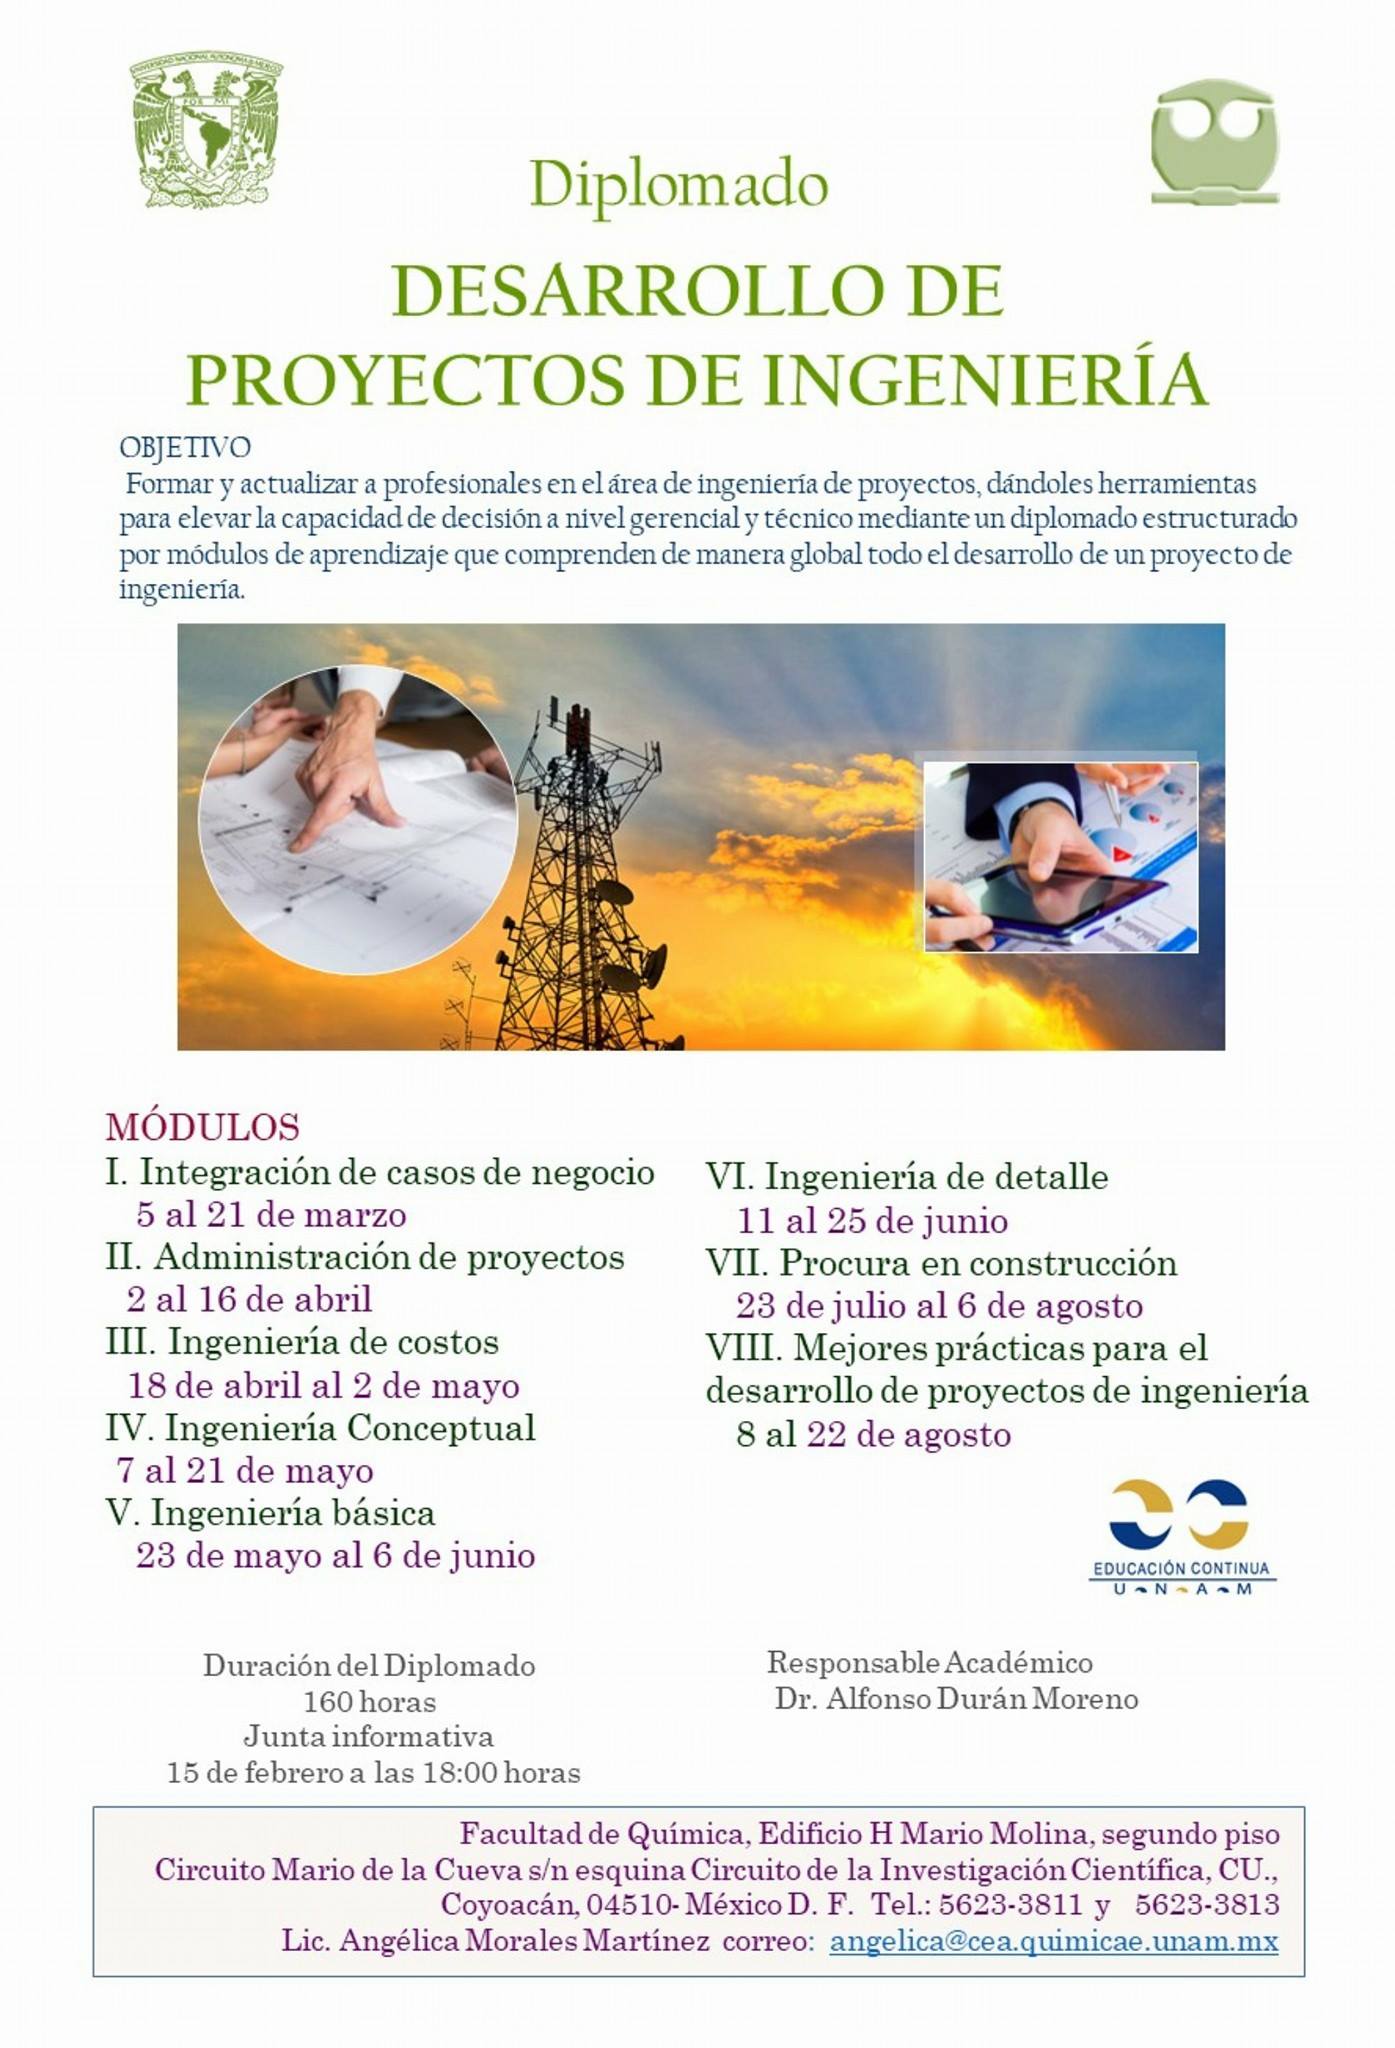 Banner del Diplomado en Desarrollo de Proyectos de Ingeniería, impartido por el Dr. Alfonso Durán